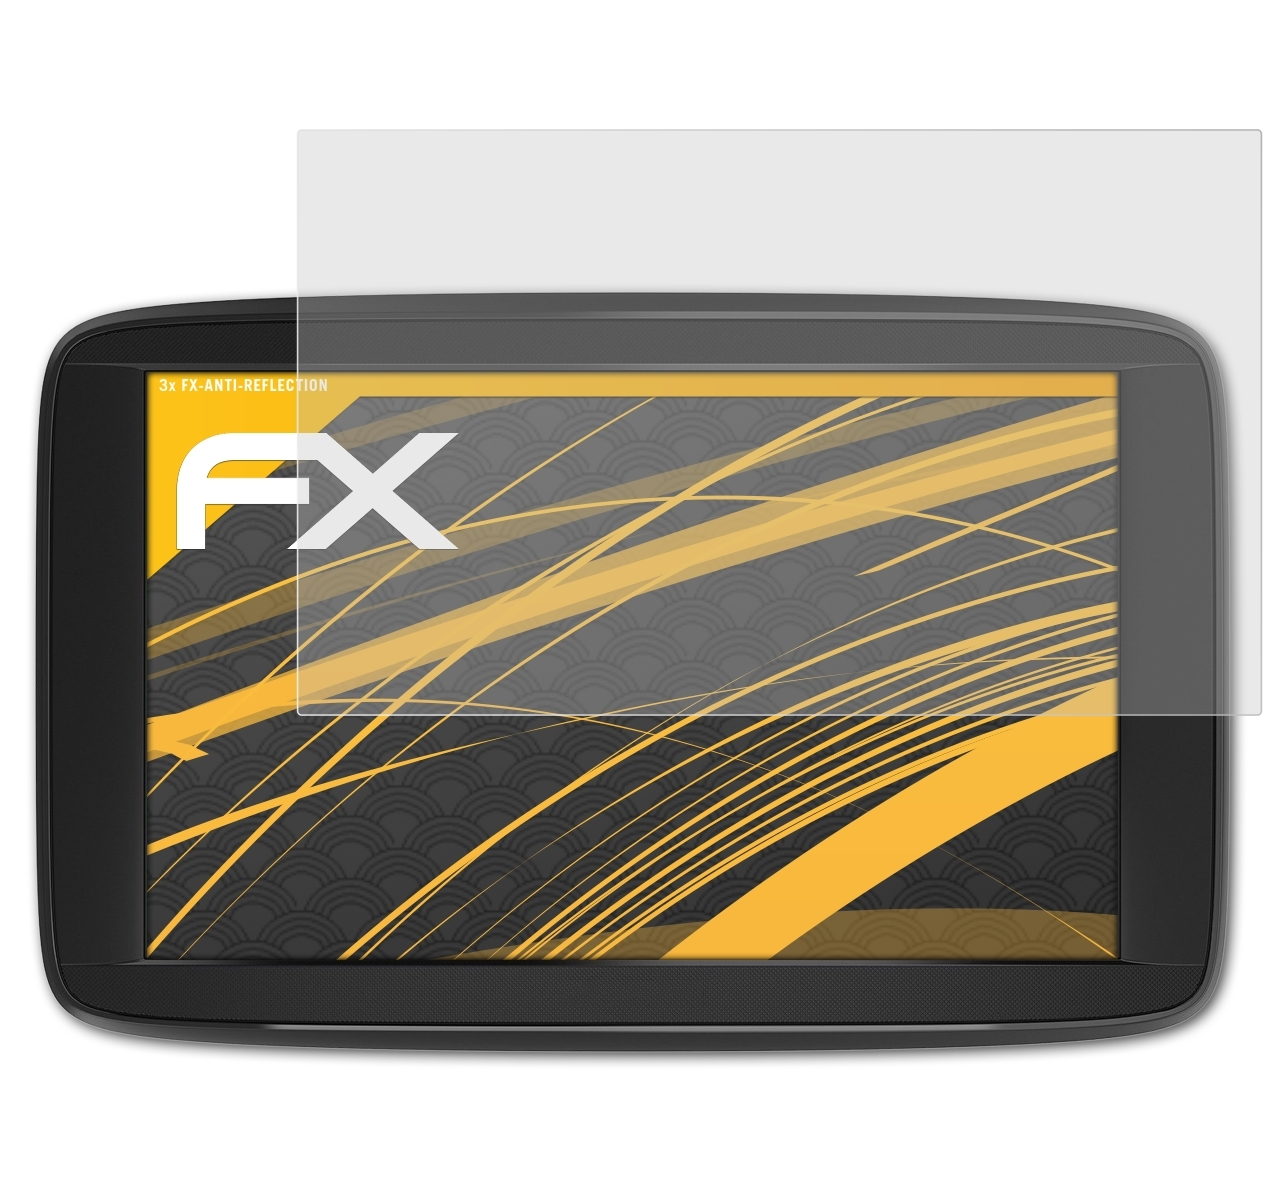 Start 62) 3x FX-Antireflex ATFOLIX Displayschutz(für TomTom